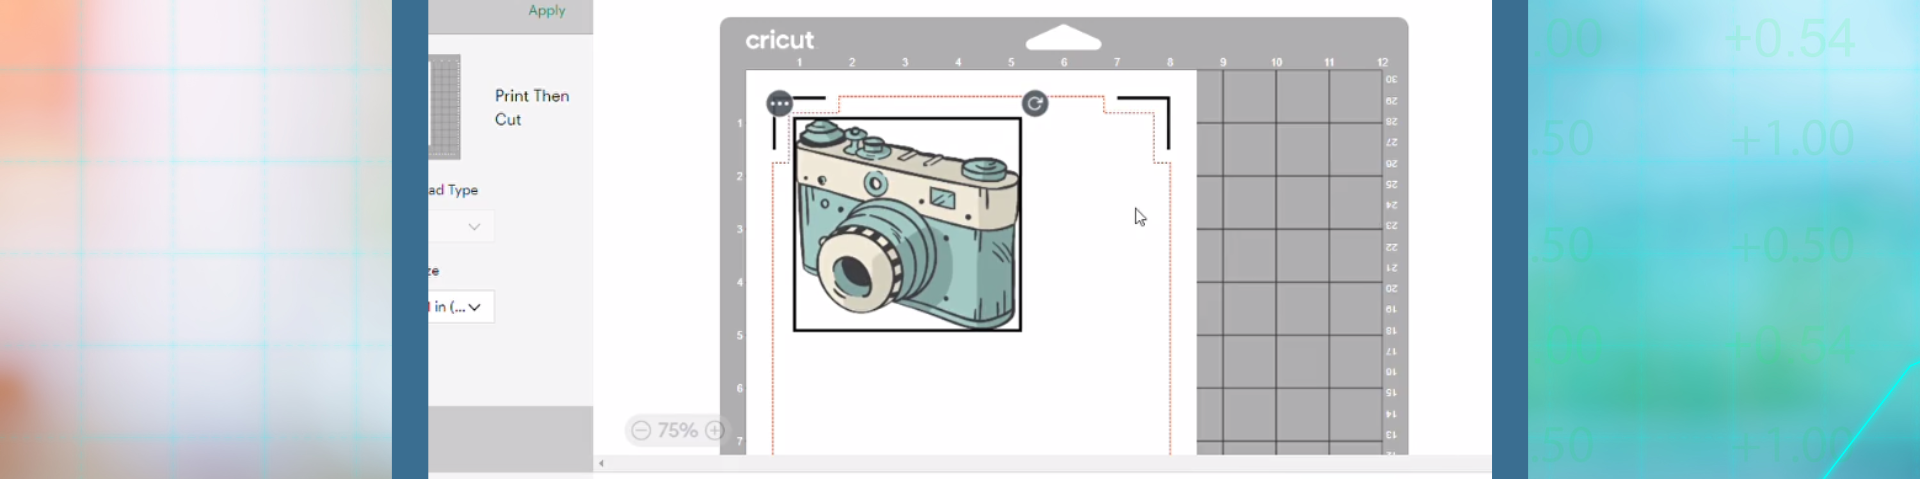 Print Then Cut Updates // Cricut Design Space Tutorial